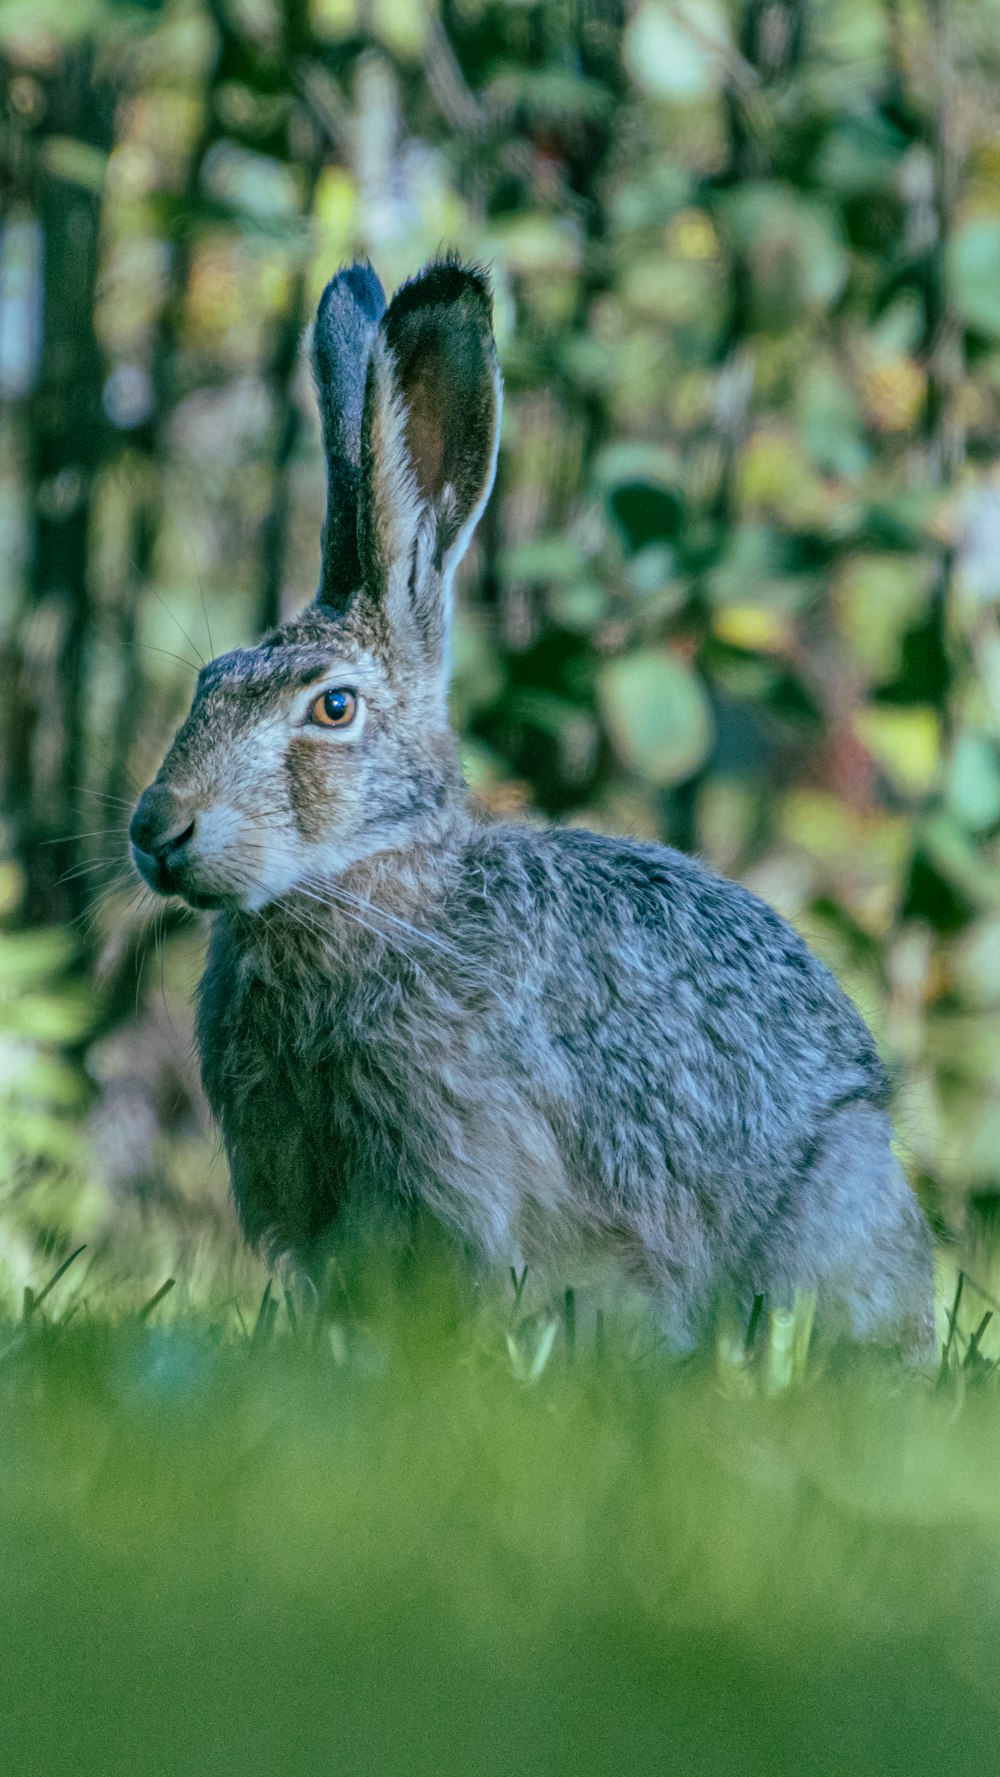 coelho cinzento na grama verde durante o dia